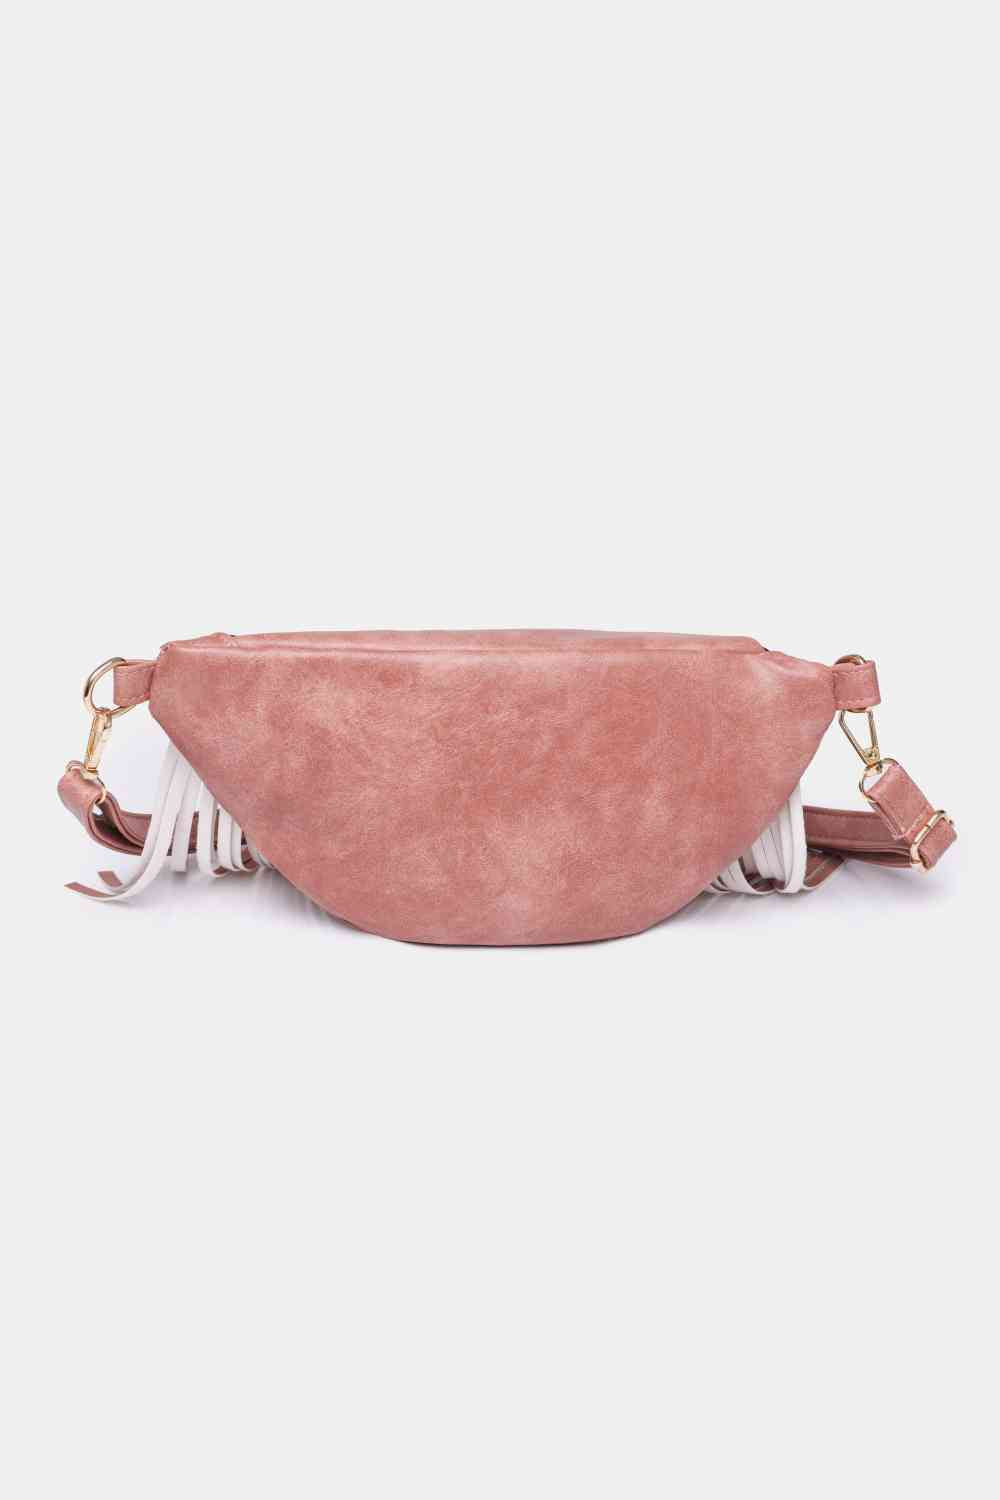 Fringed PU Leather Sling Bag - Handbag - FITGGINS